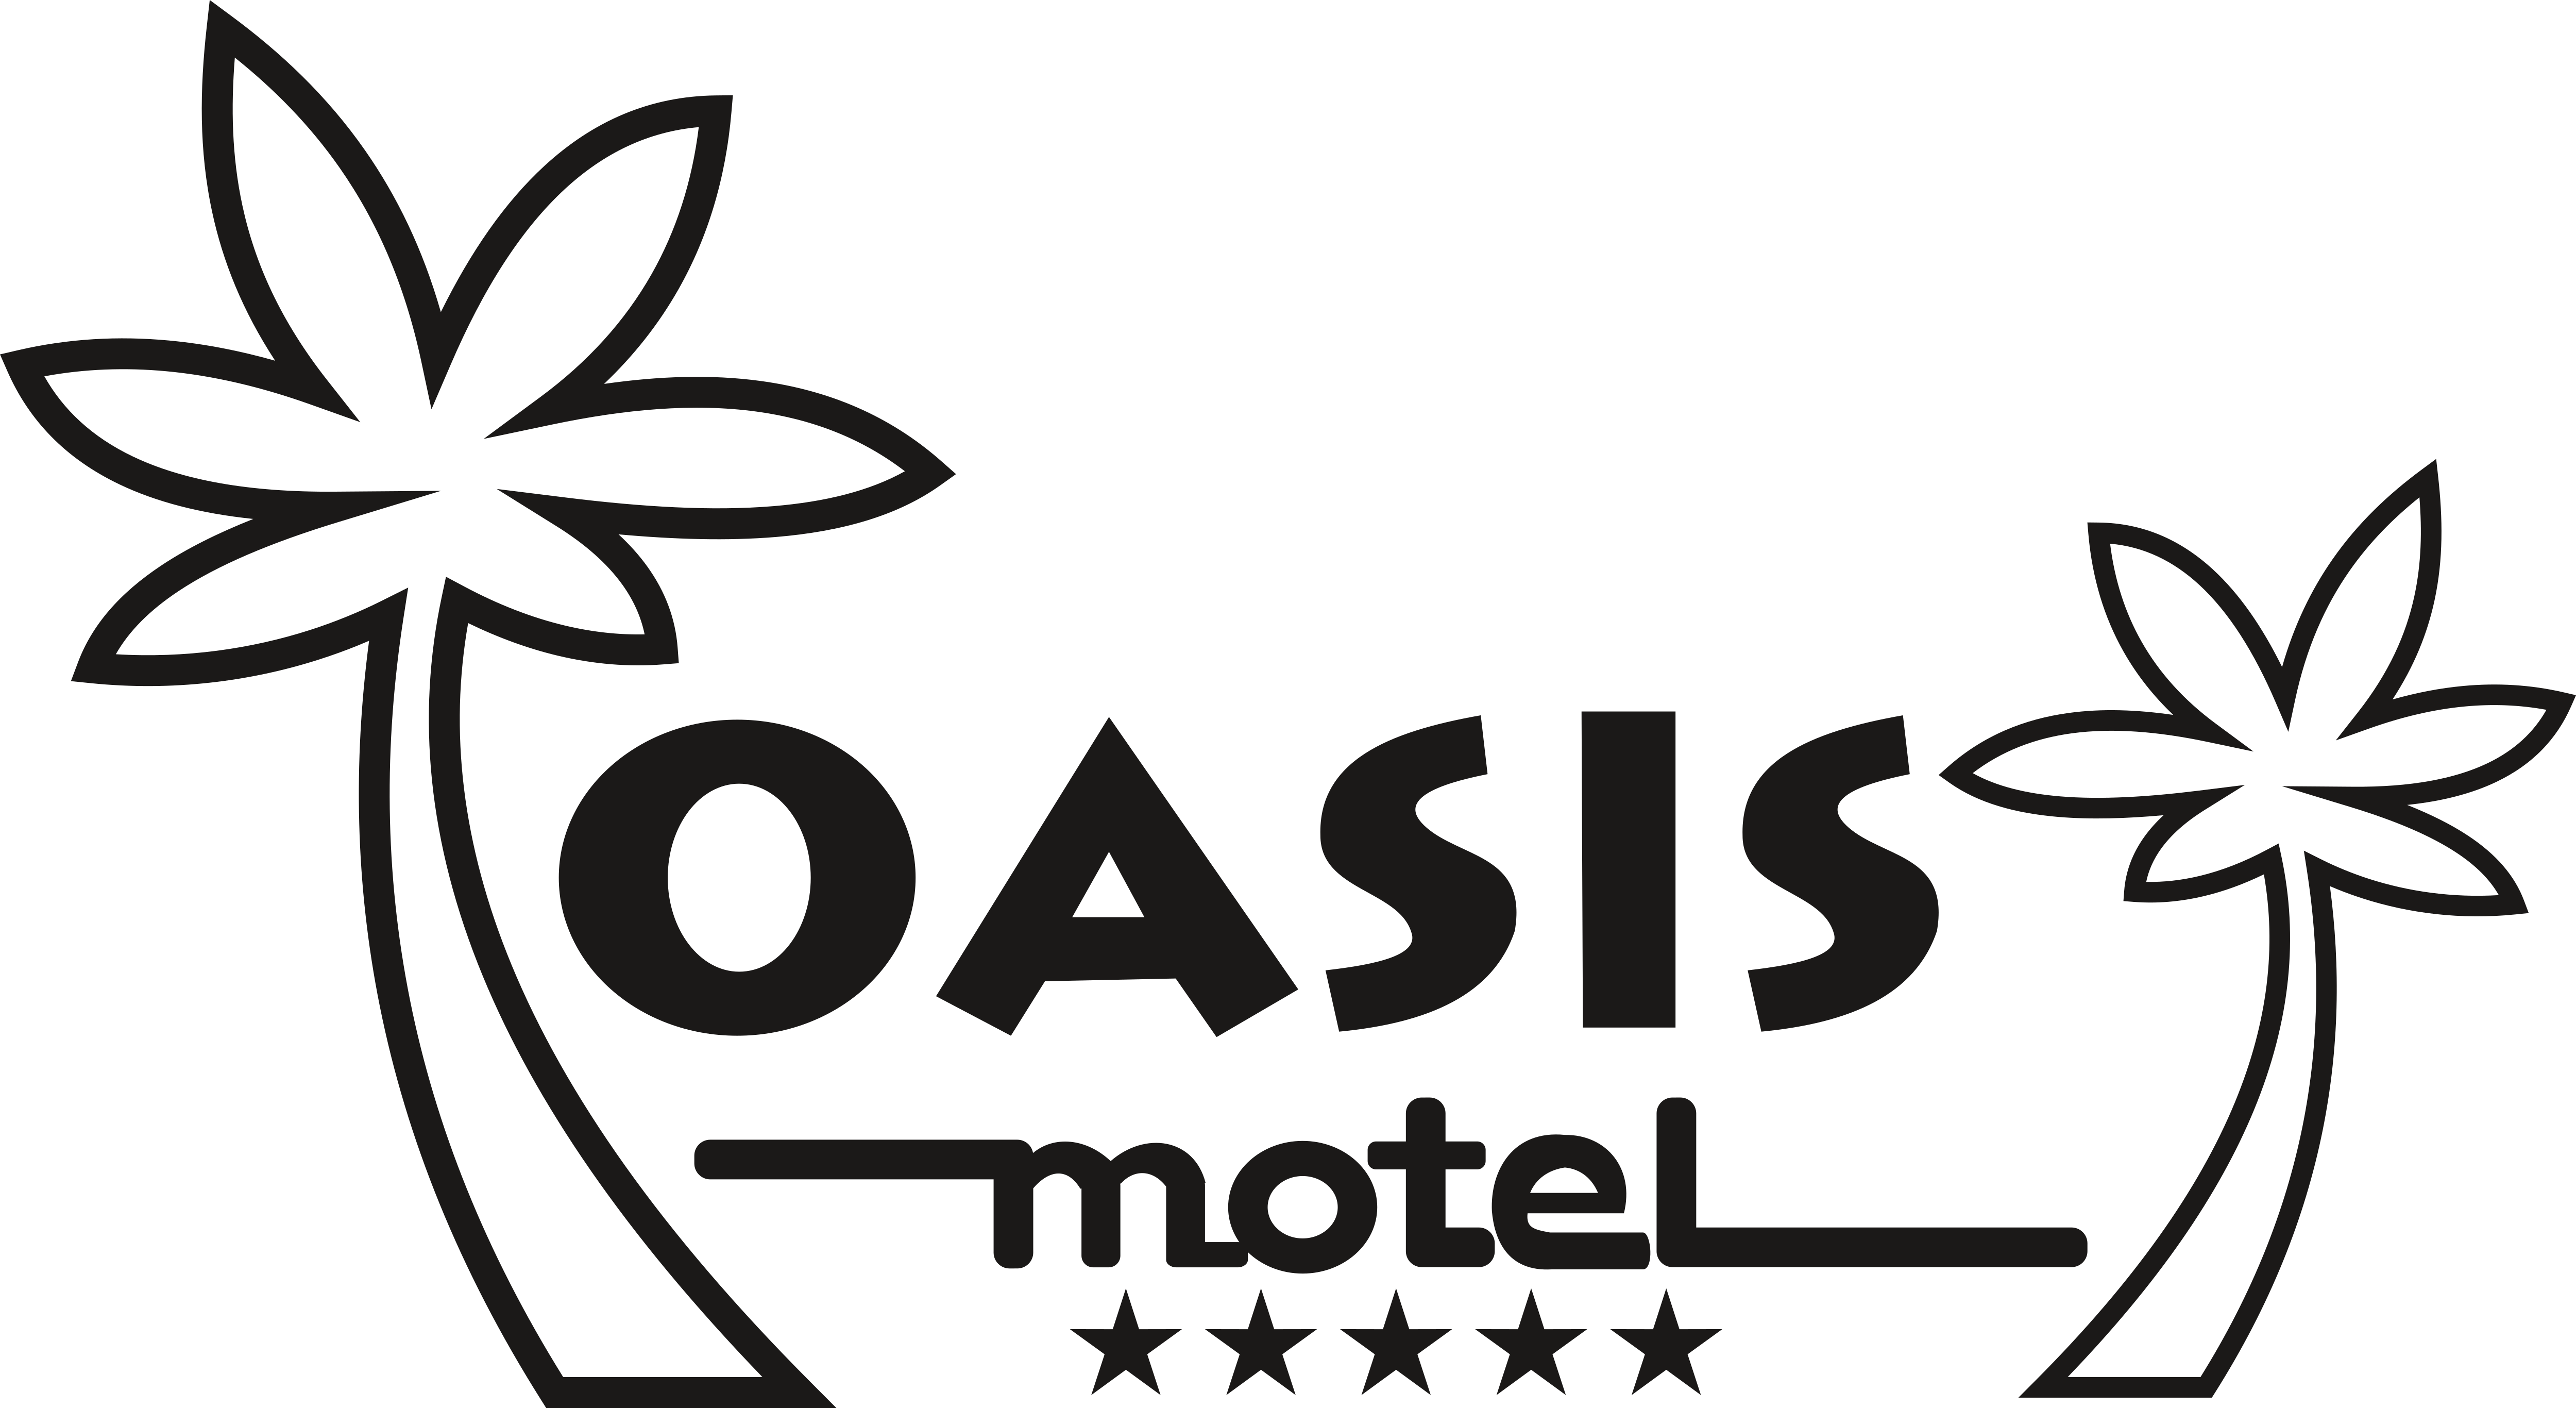 Oasis Logo Black And White | elvisspiritoftheking.com